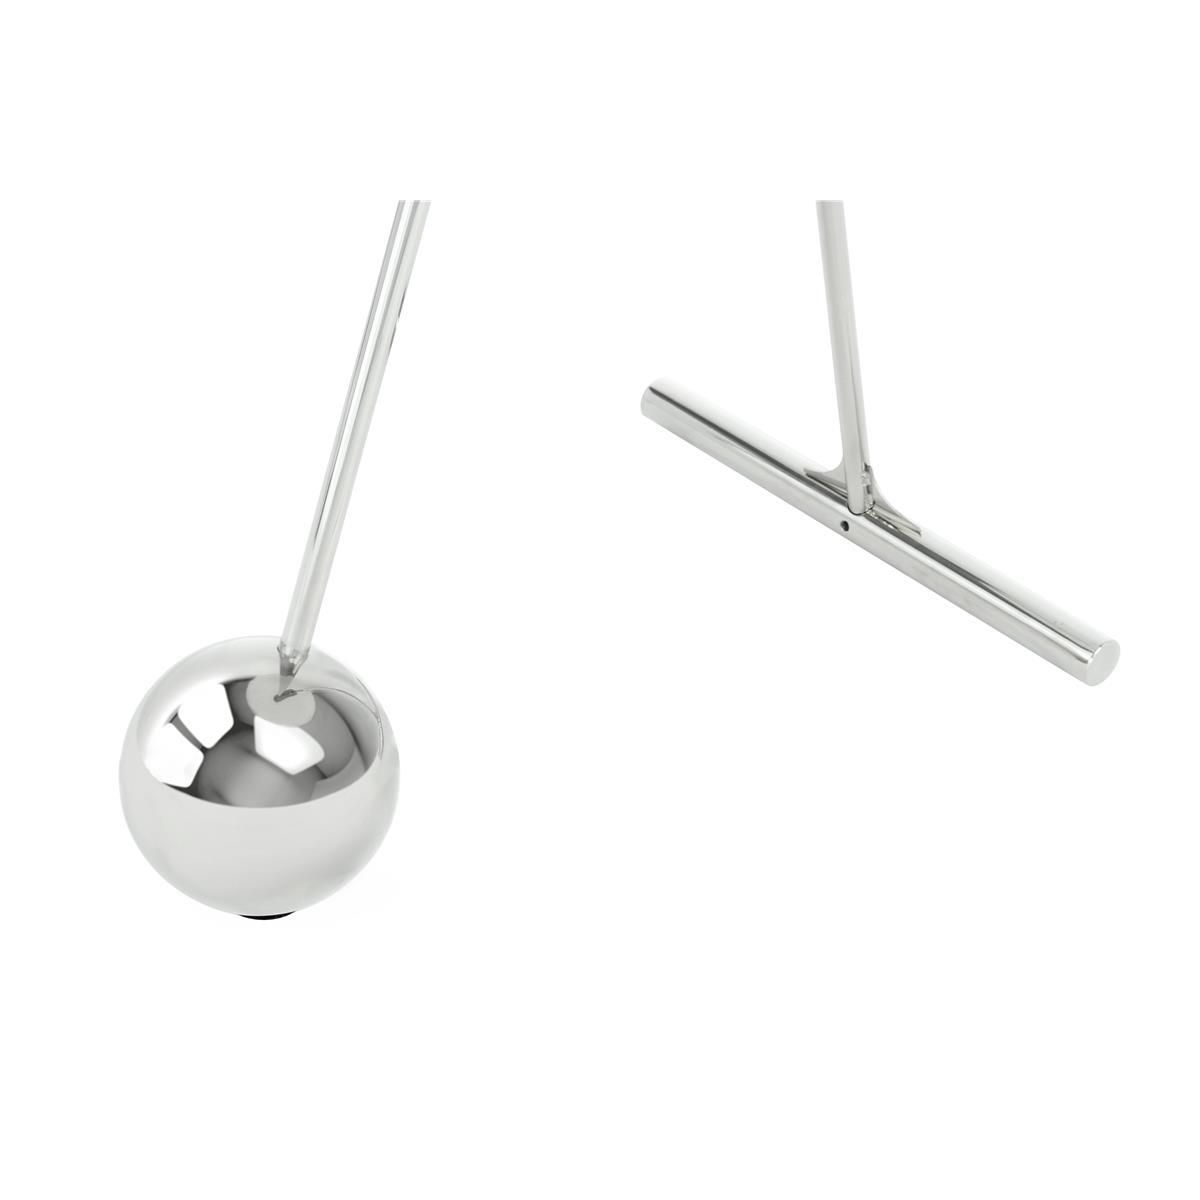 Beistelltisch Pendulum 525 Silber / Weiß - 46 cm (L) x 46 cm (B) x 60 cm (H)